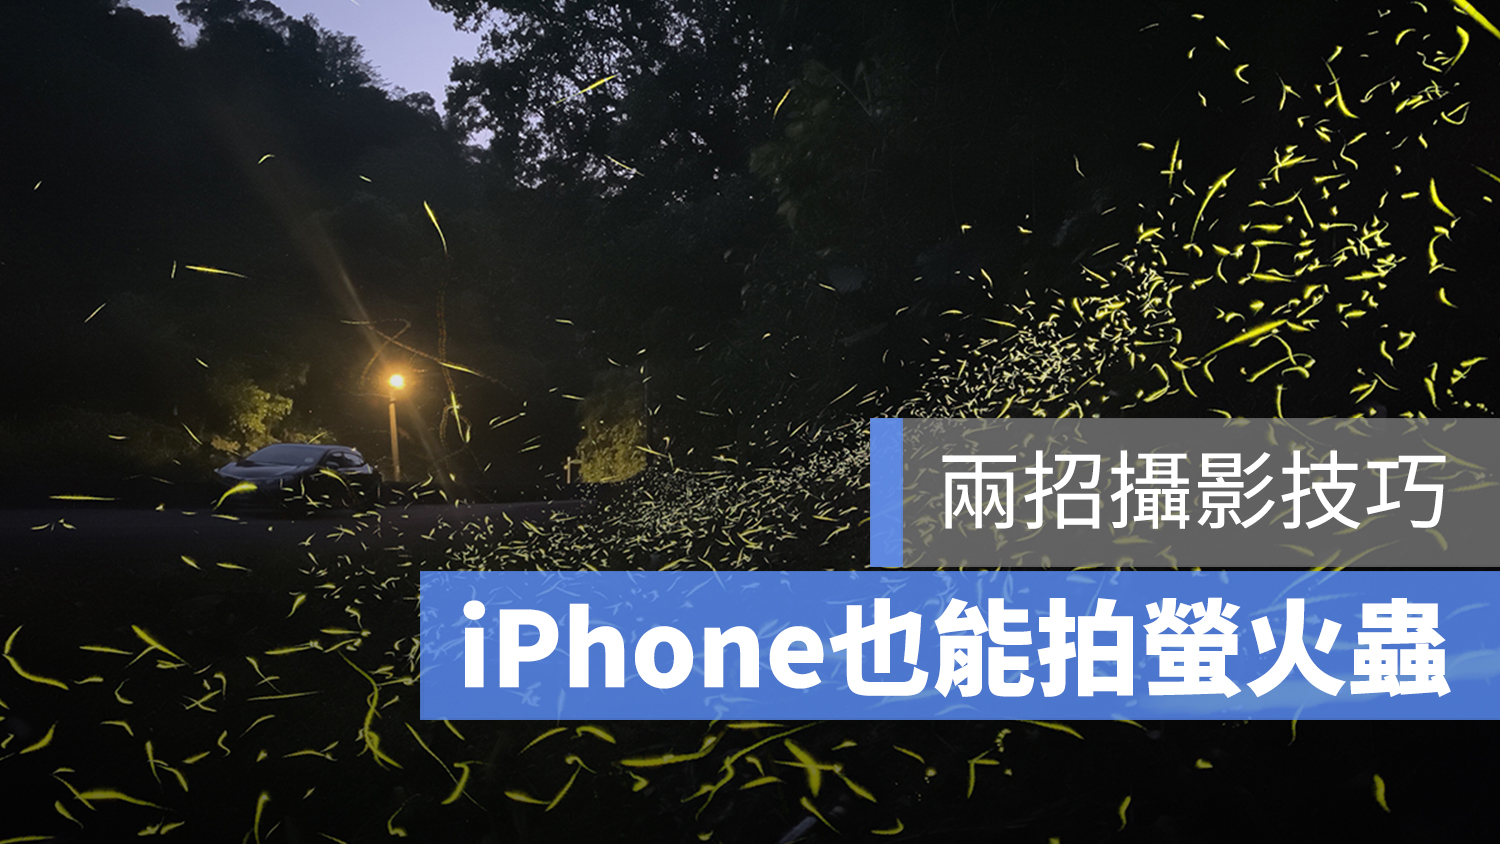 iPhone 拍螢火蟲 夜拍 低光源